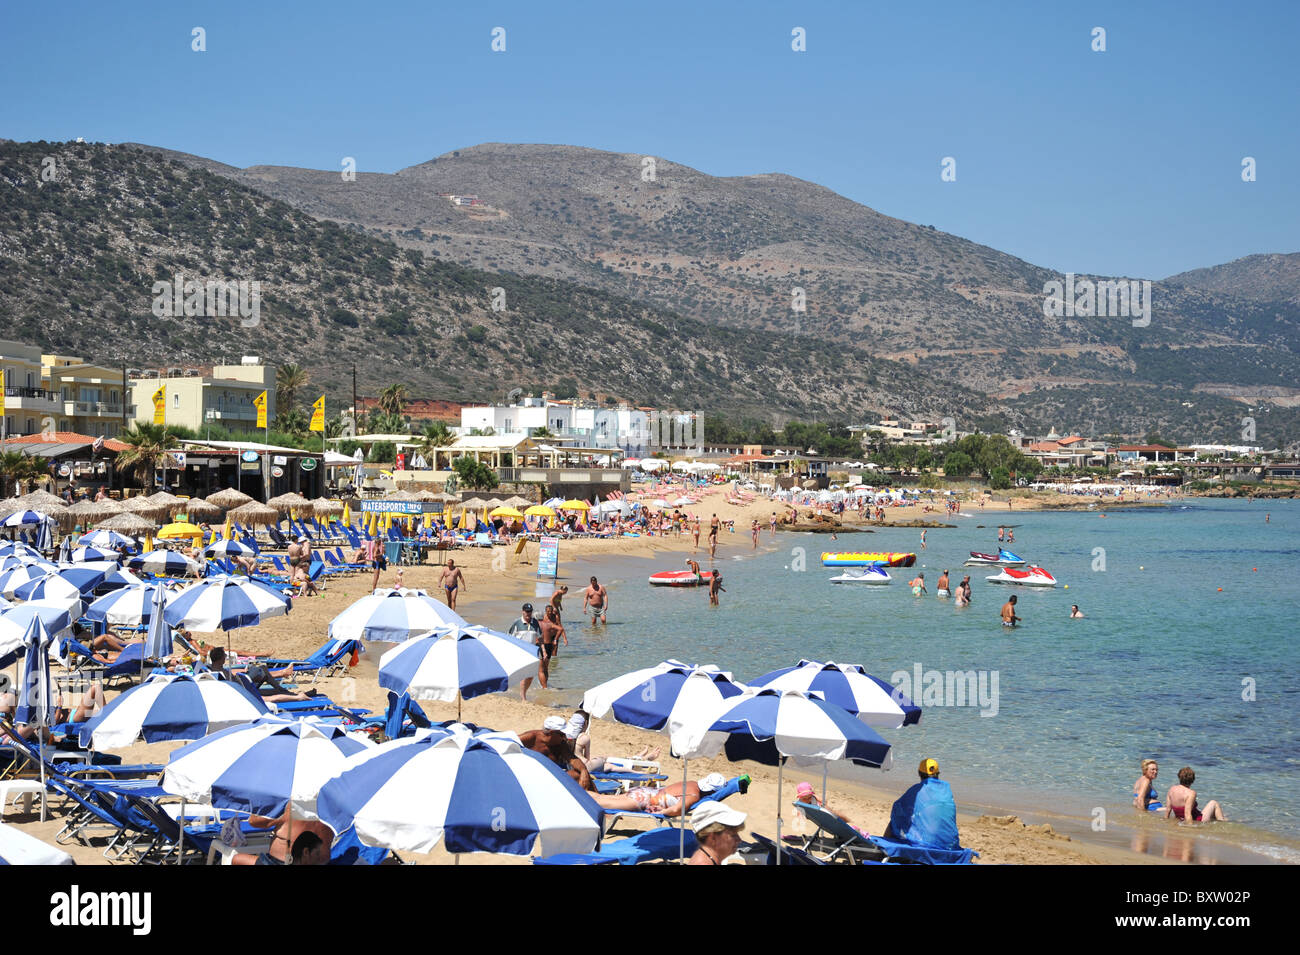 Wide sandy beach in Malia, Crete, Greece Stock Photo